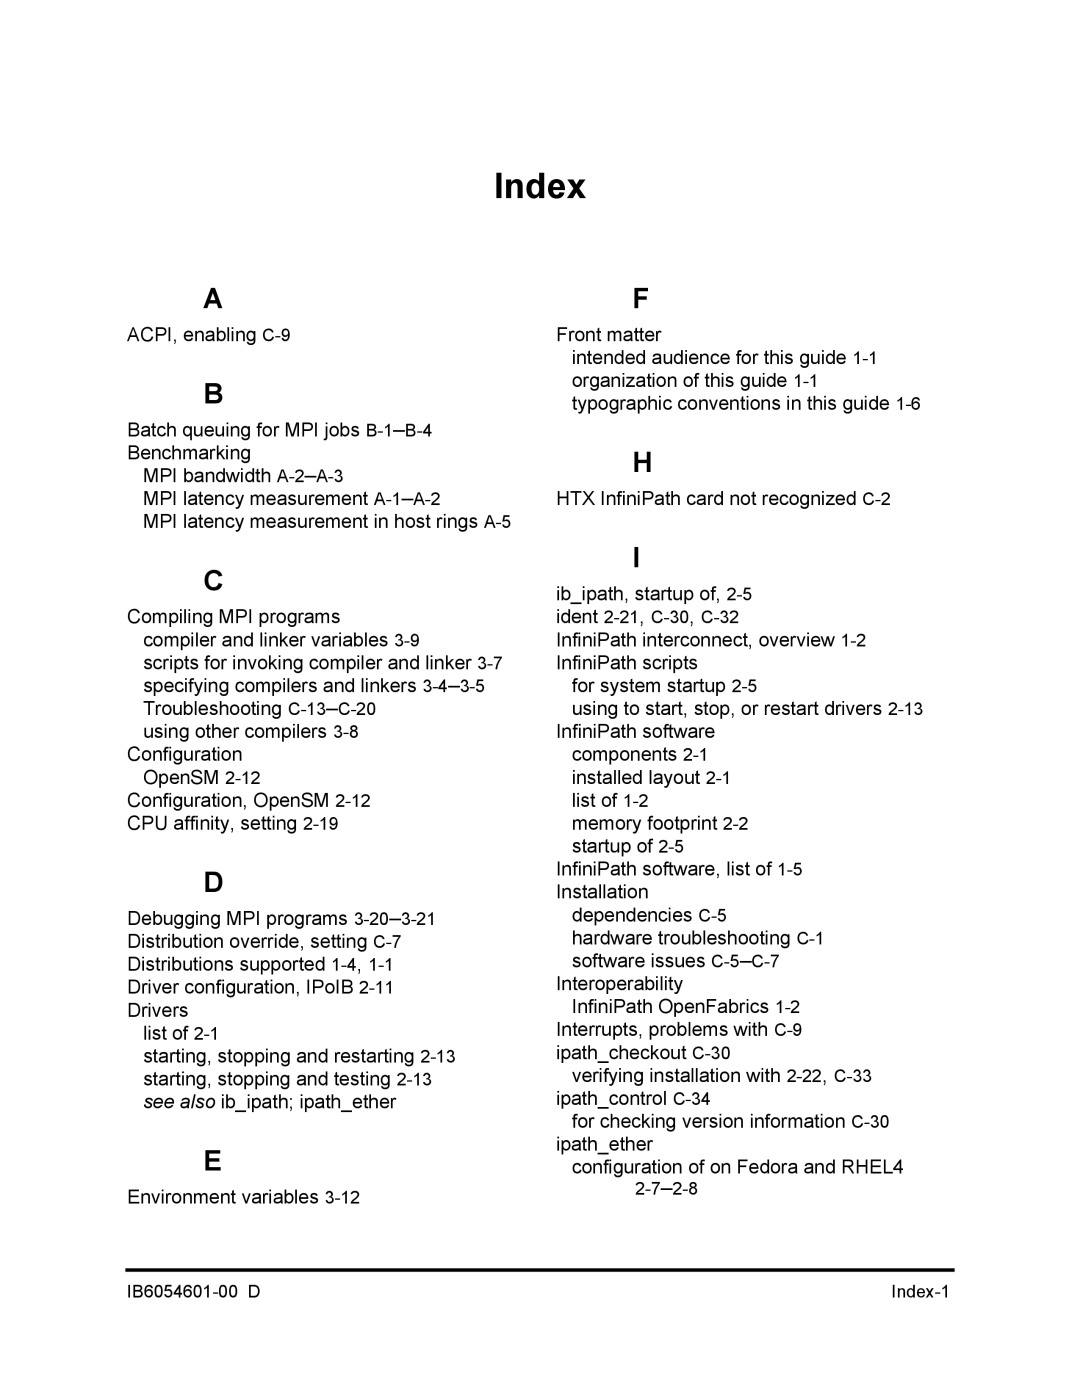 Q-Logic IB6054601-00 D manual Index 